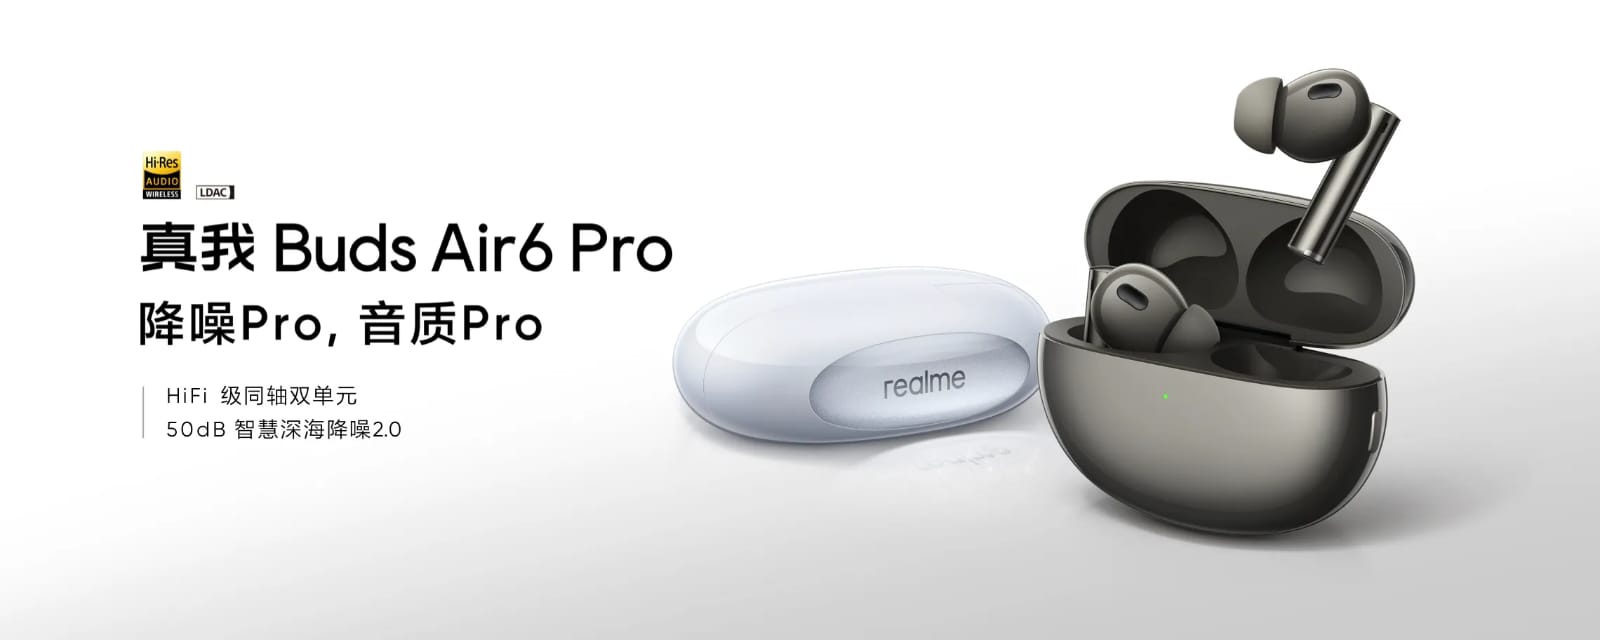 Realme Buds Air6 Pro Resmi Meluncur: TWS Canggih dengan Audio Spasial dan Daya Tahan Baterai 10 Jam